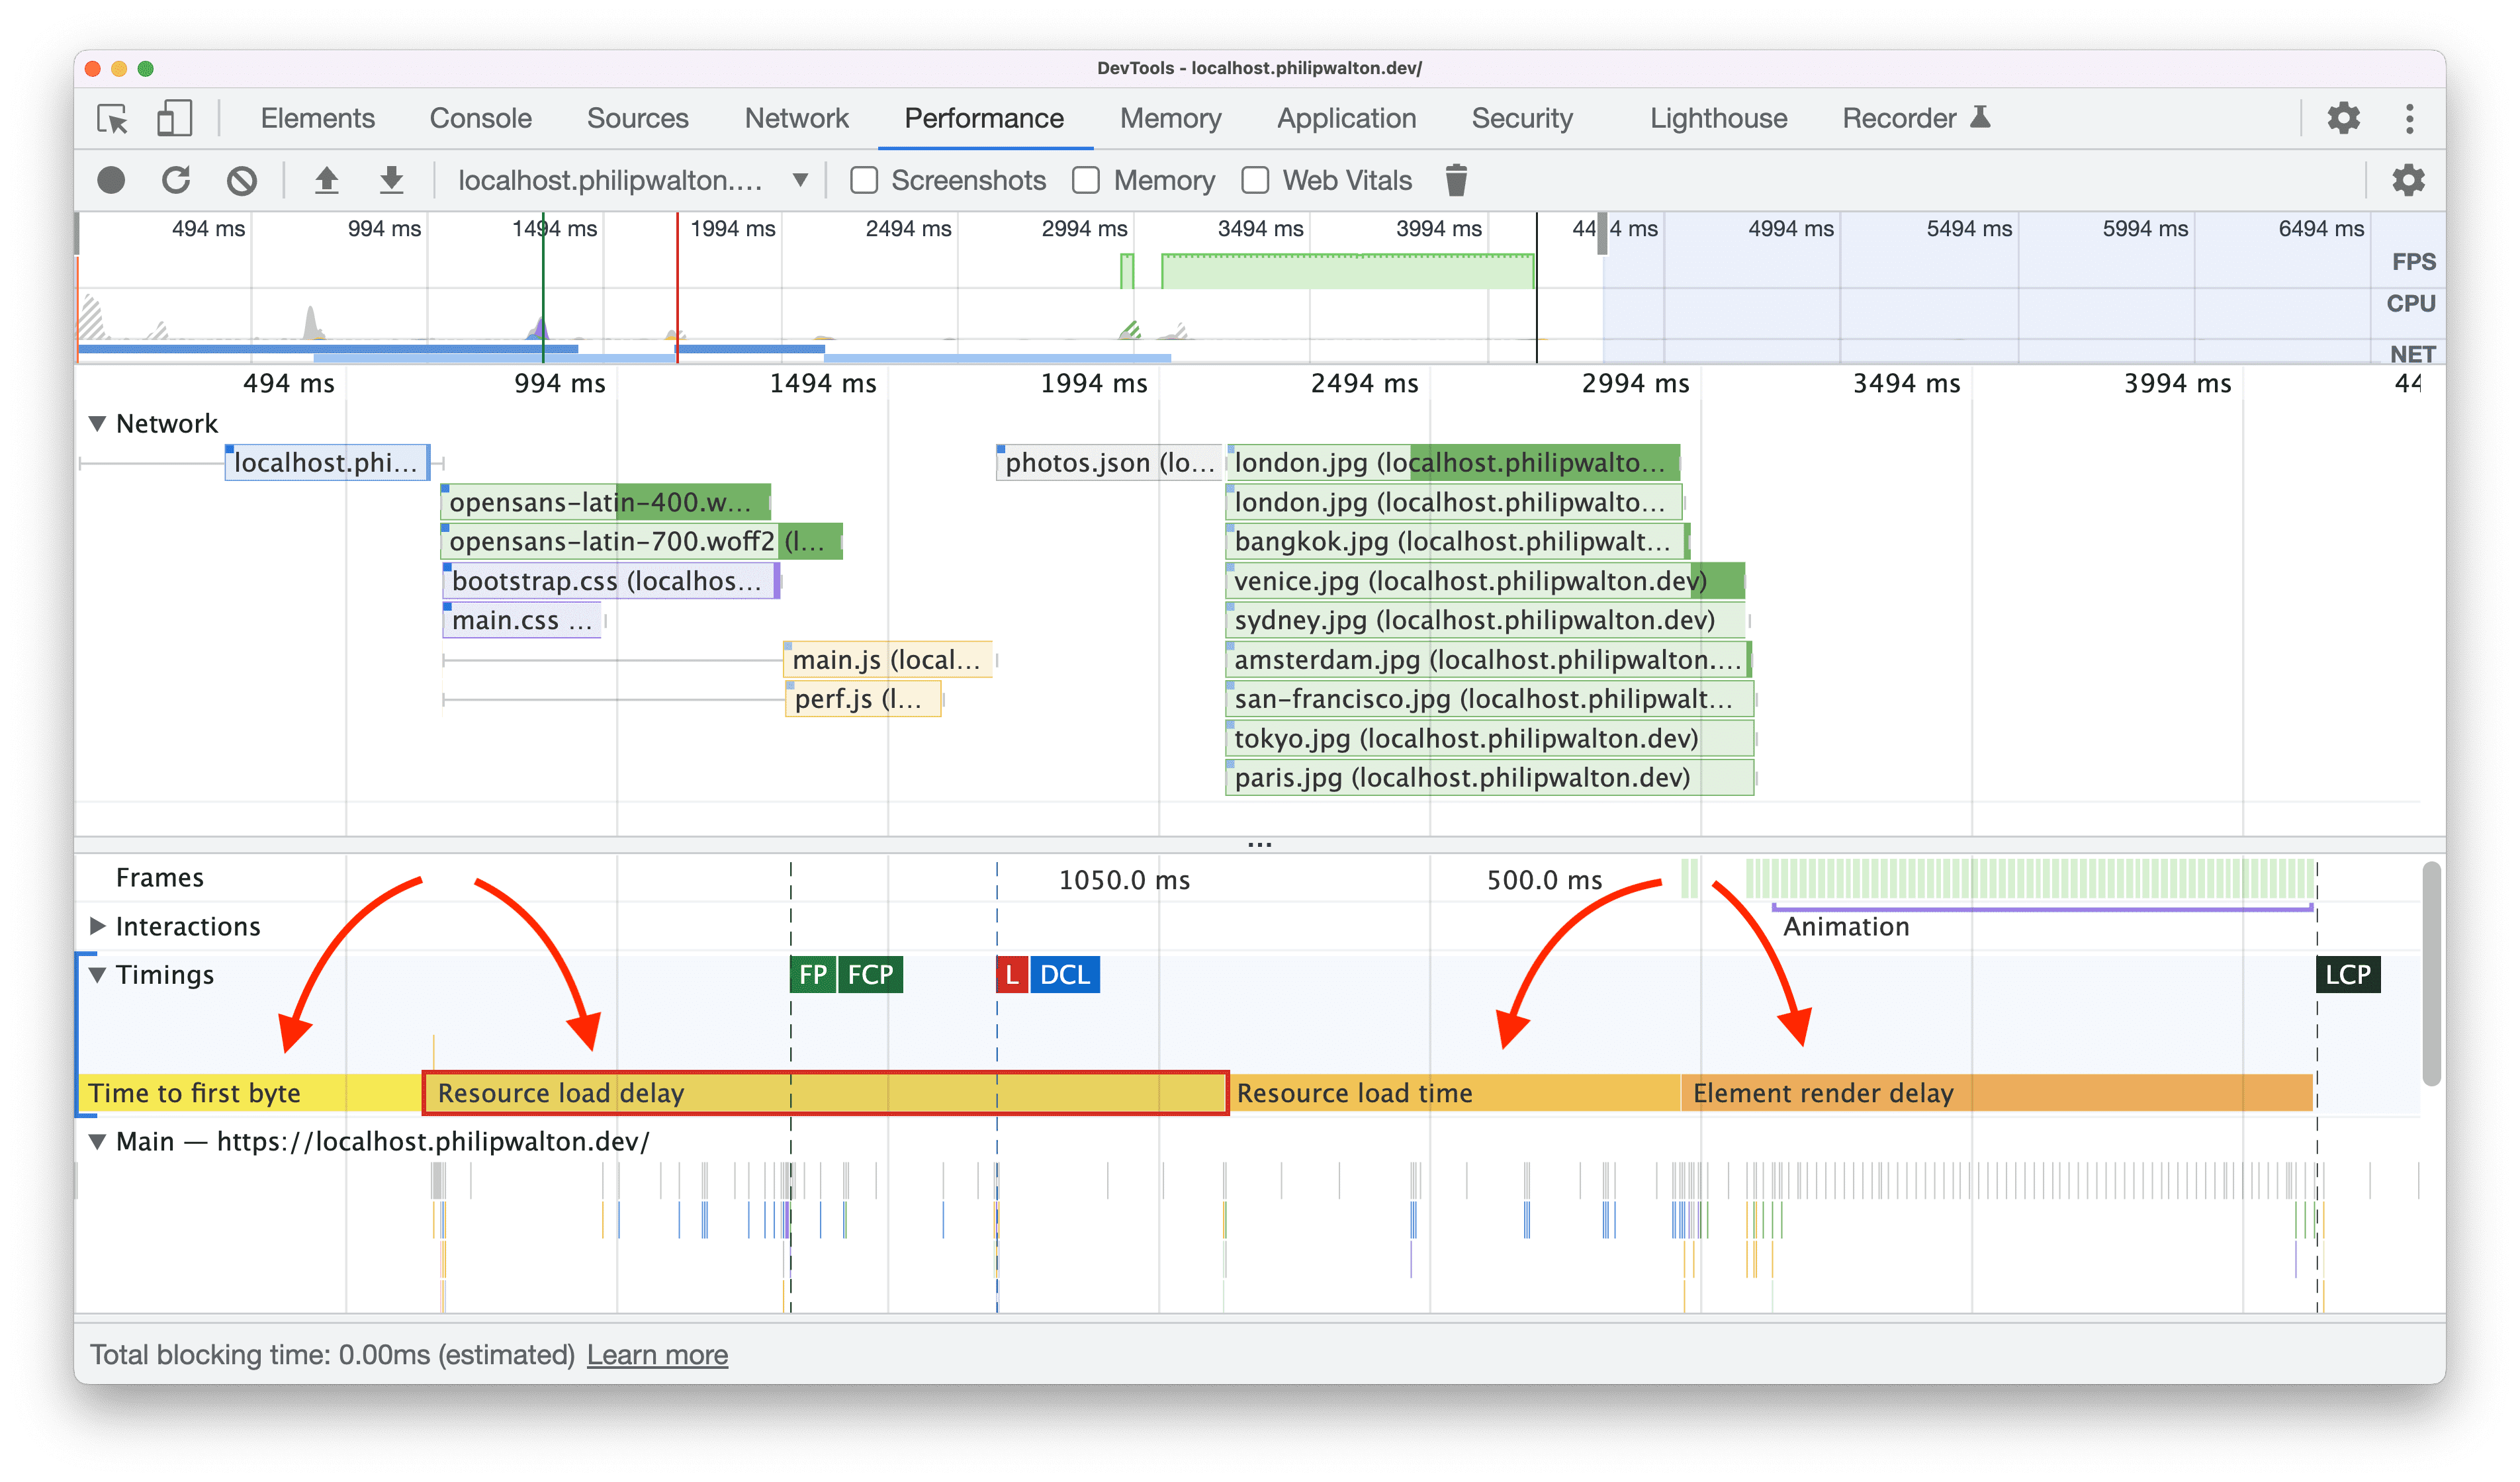 Wskaźniki czasu działań użytkownika w podkategoriach LCP wizualizowanych w Narzędziach deweloperskich w Chrome